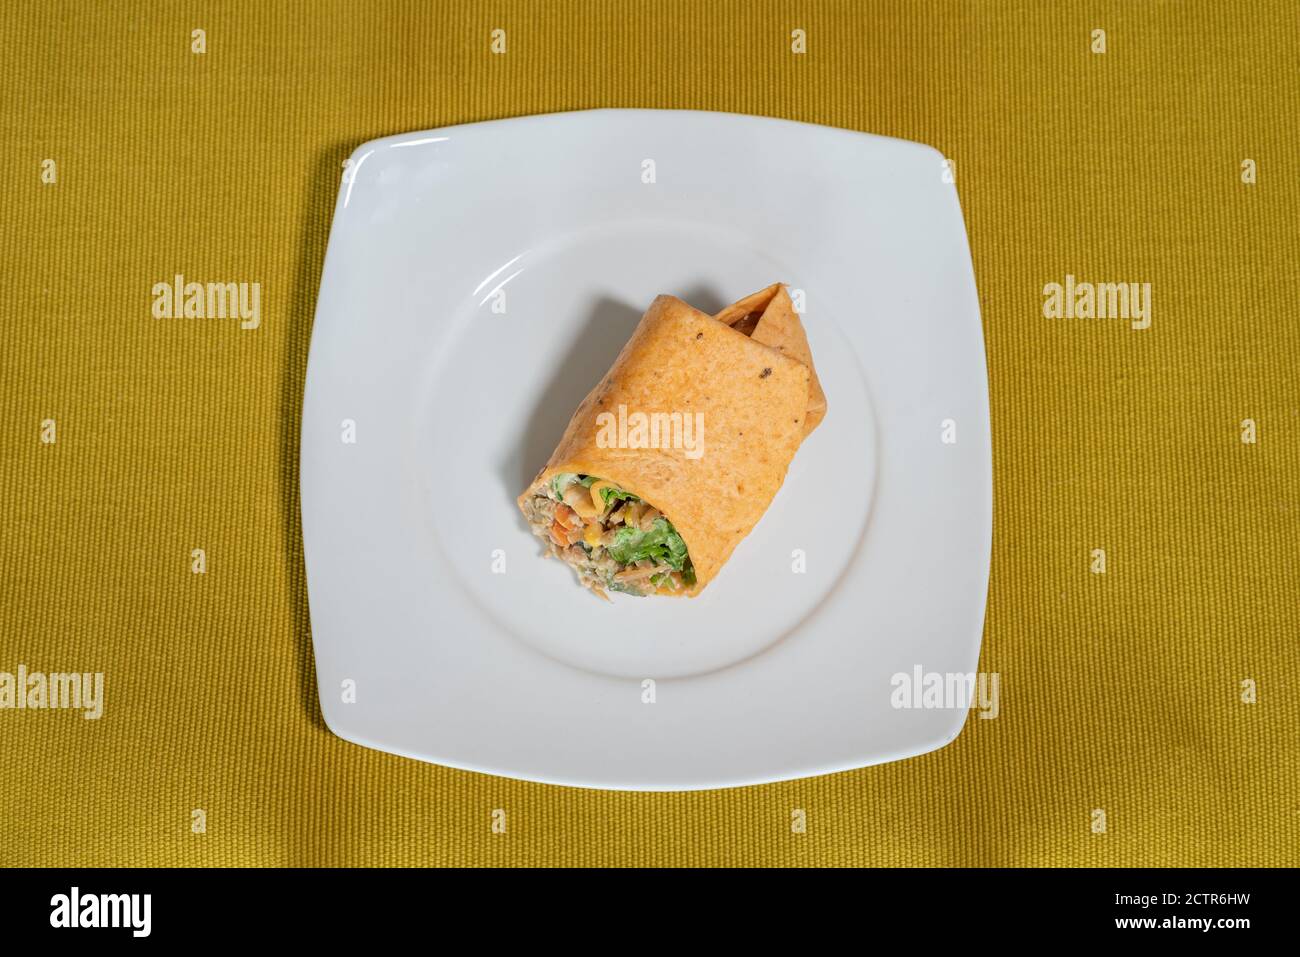 Vegetarische Verpackung serviert auf einem weißen Teller, der auf einem senffarbenen Tischläufer ruht, Food-Fotografie, die eine Tacos-Rolle zeigt, gefüllt mit Gemüse und Stockfoto